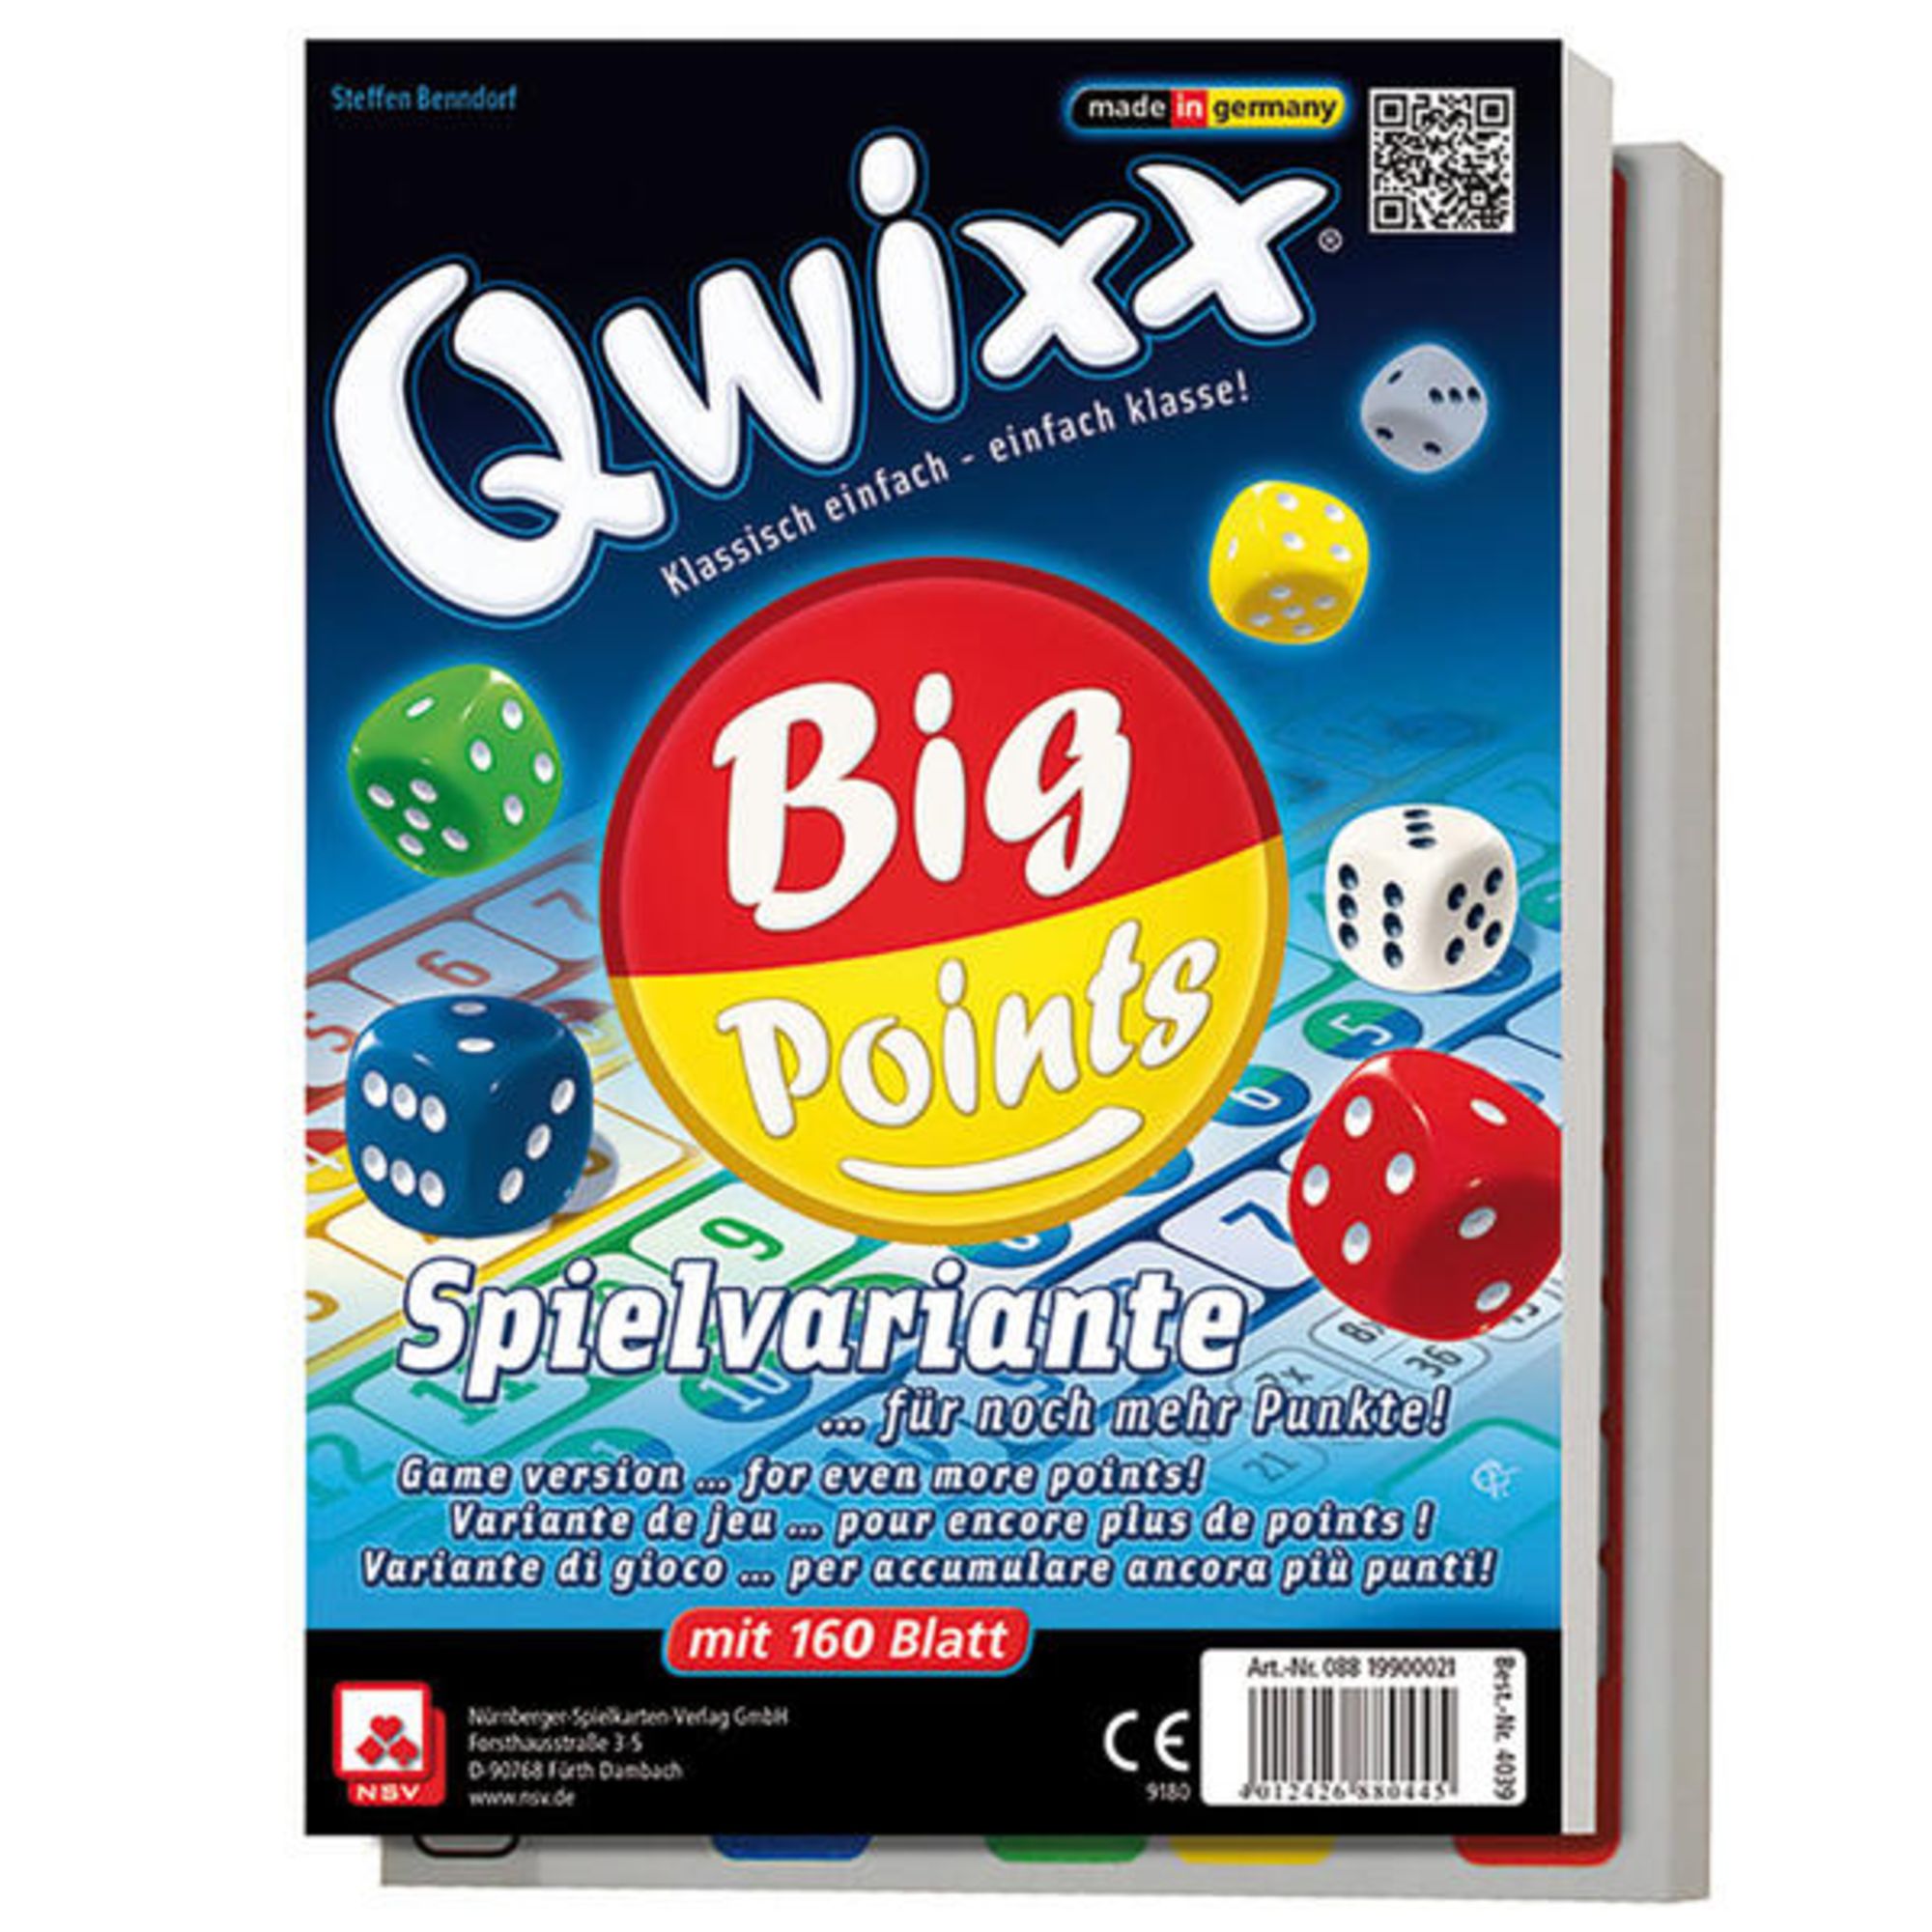 Qwixx Big Points, 160 Blatt im 2er-Pack für noch mehr Punkte!' kaufen -  Spielwaren